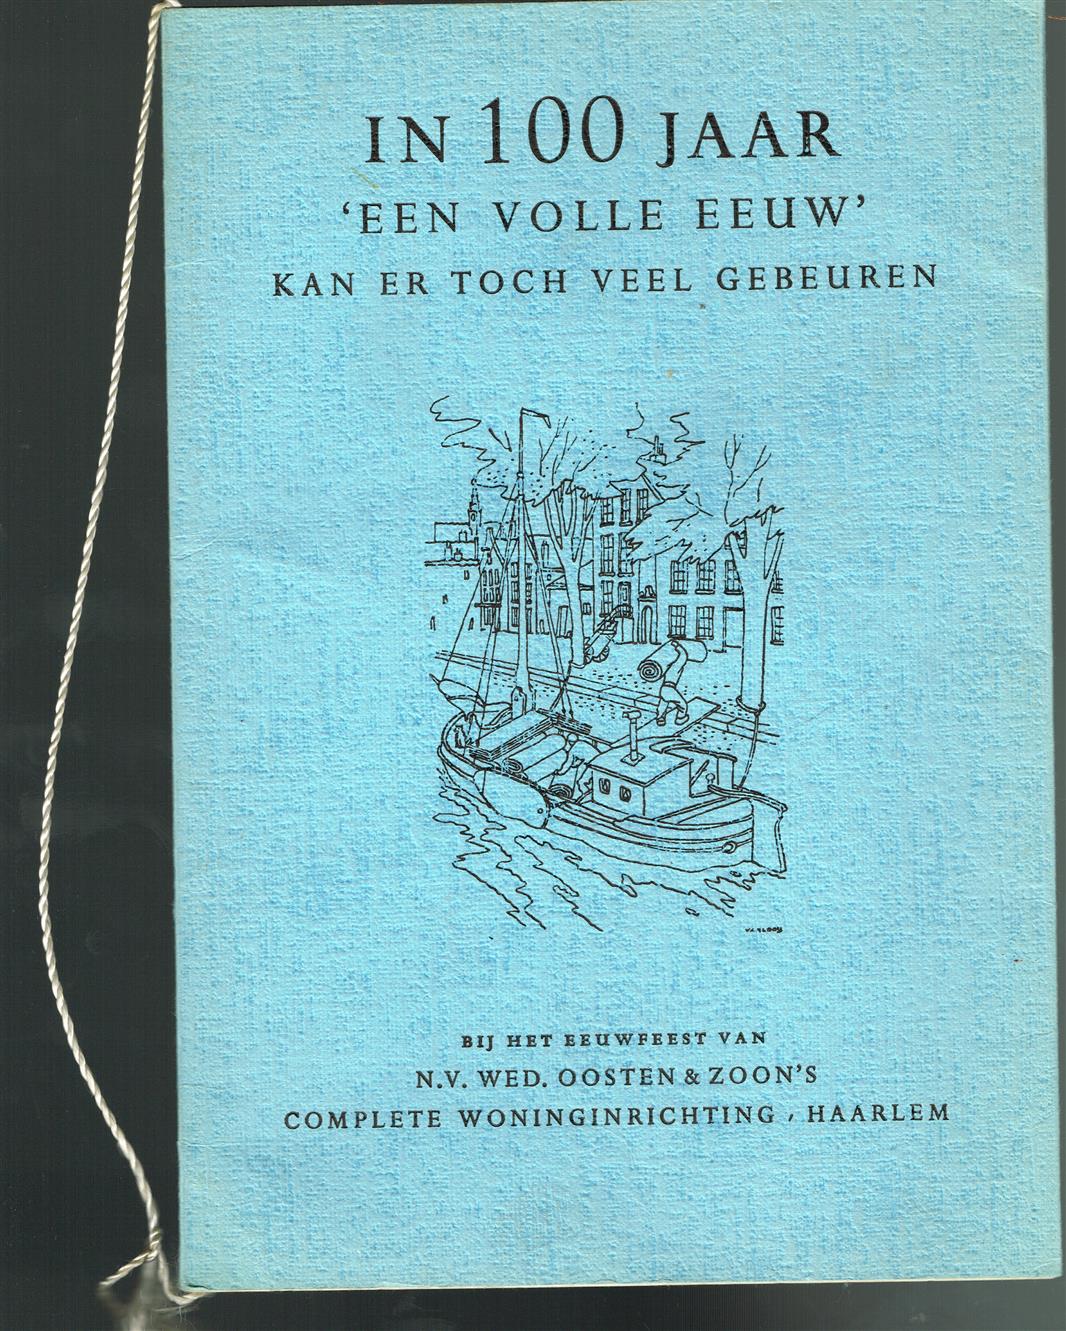 In 100 jaar 'een volle eeuw' kan er toch veel gebeuren bij het eeuwfeest van N.V. Wed. Oosten & Zoon's complete woninginrichting Haarlem.